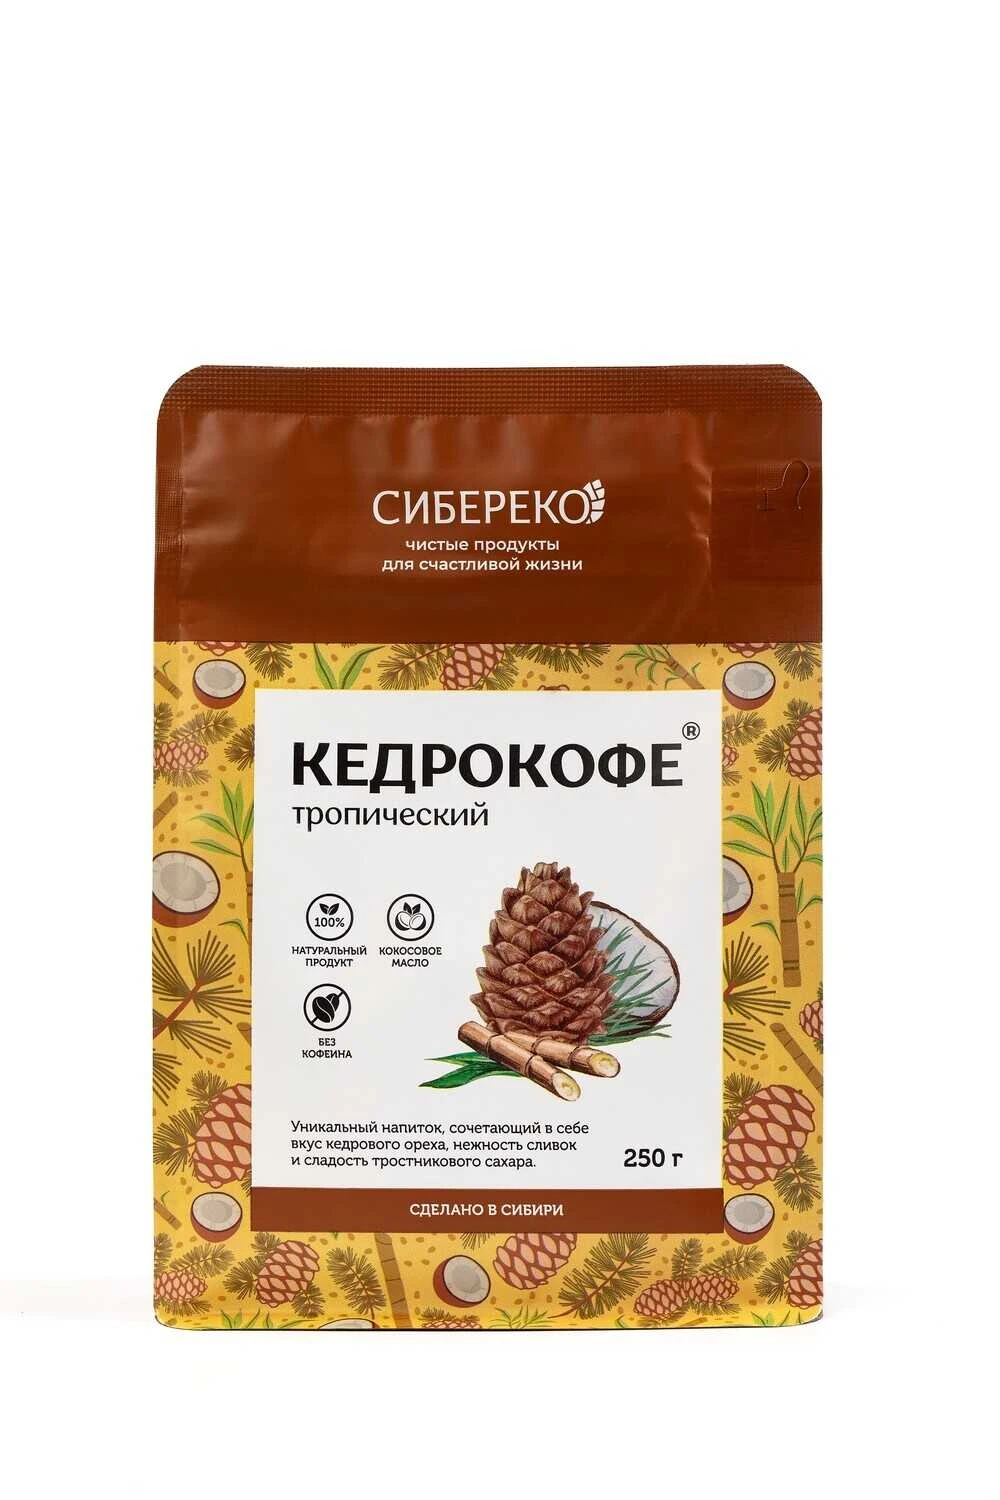 Кедрокофе Тропический с тростниковым сахаром Сибереко 250 г.